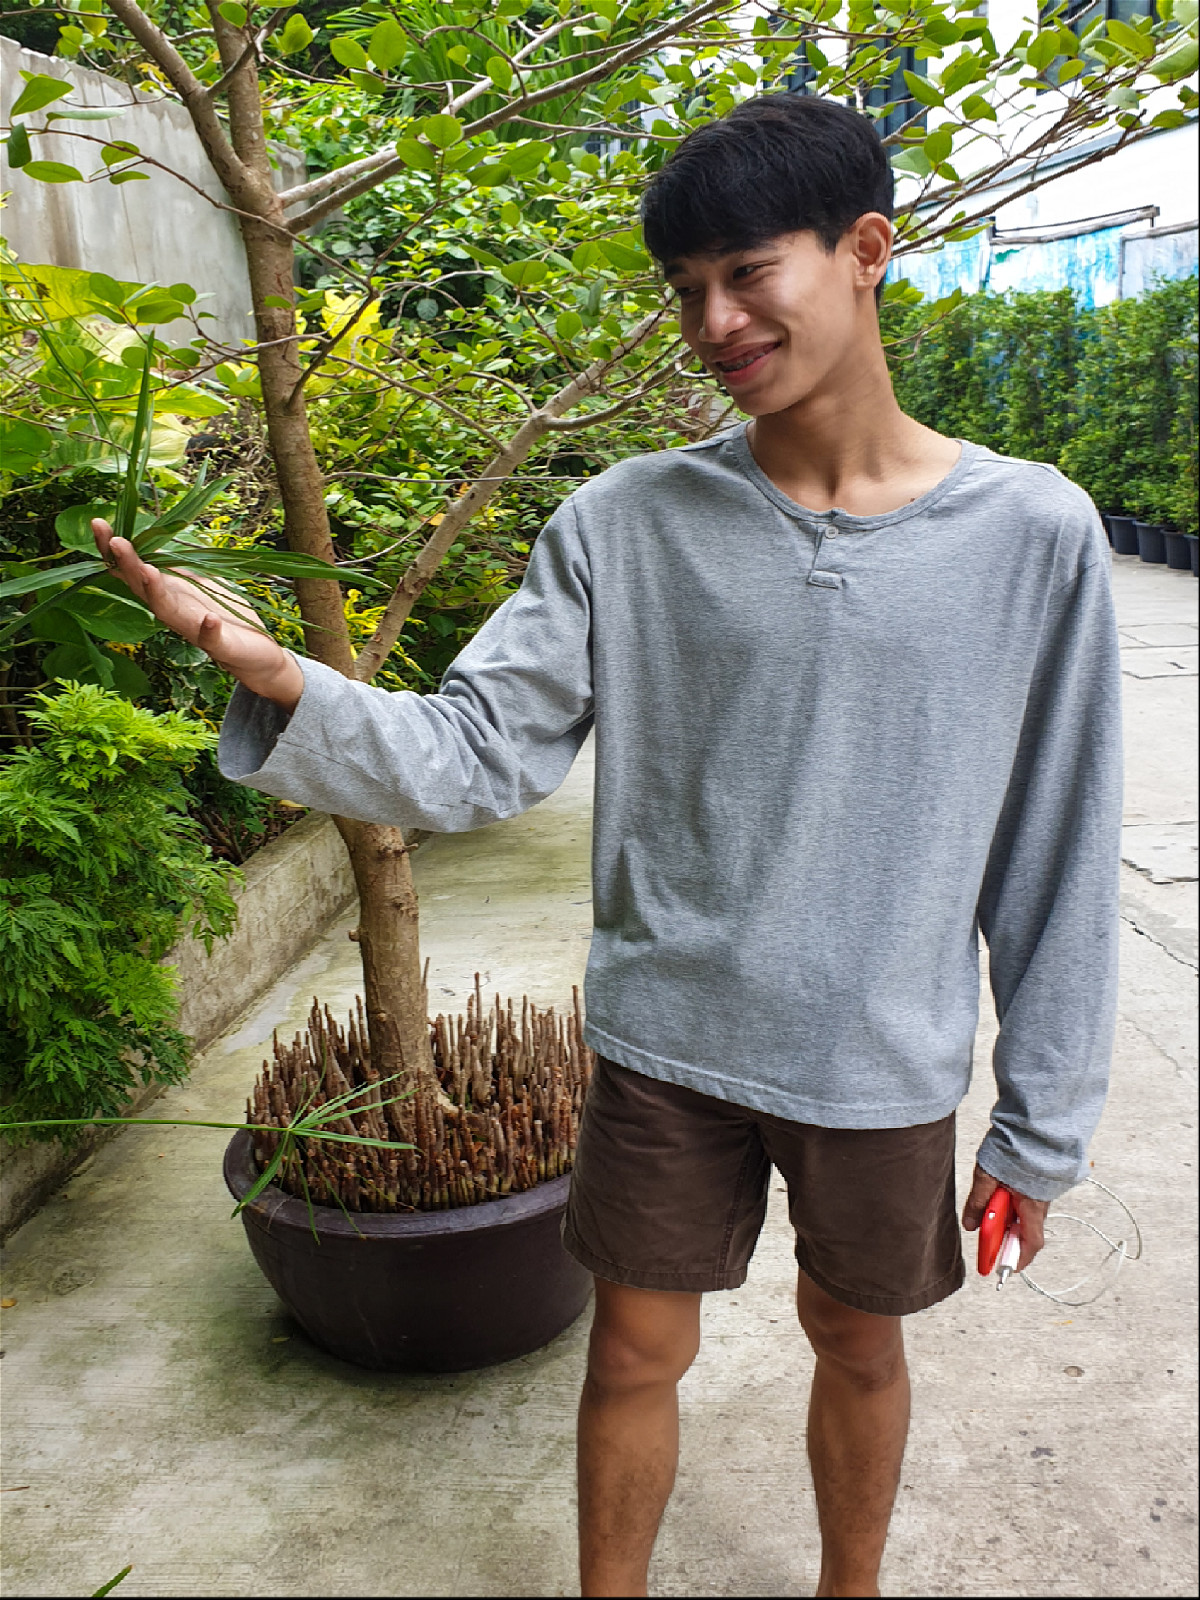 молодой таец любуется растением в саду